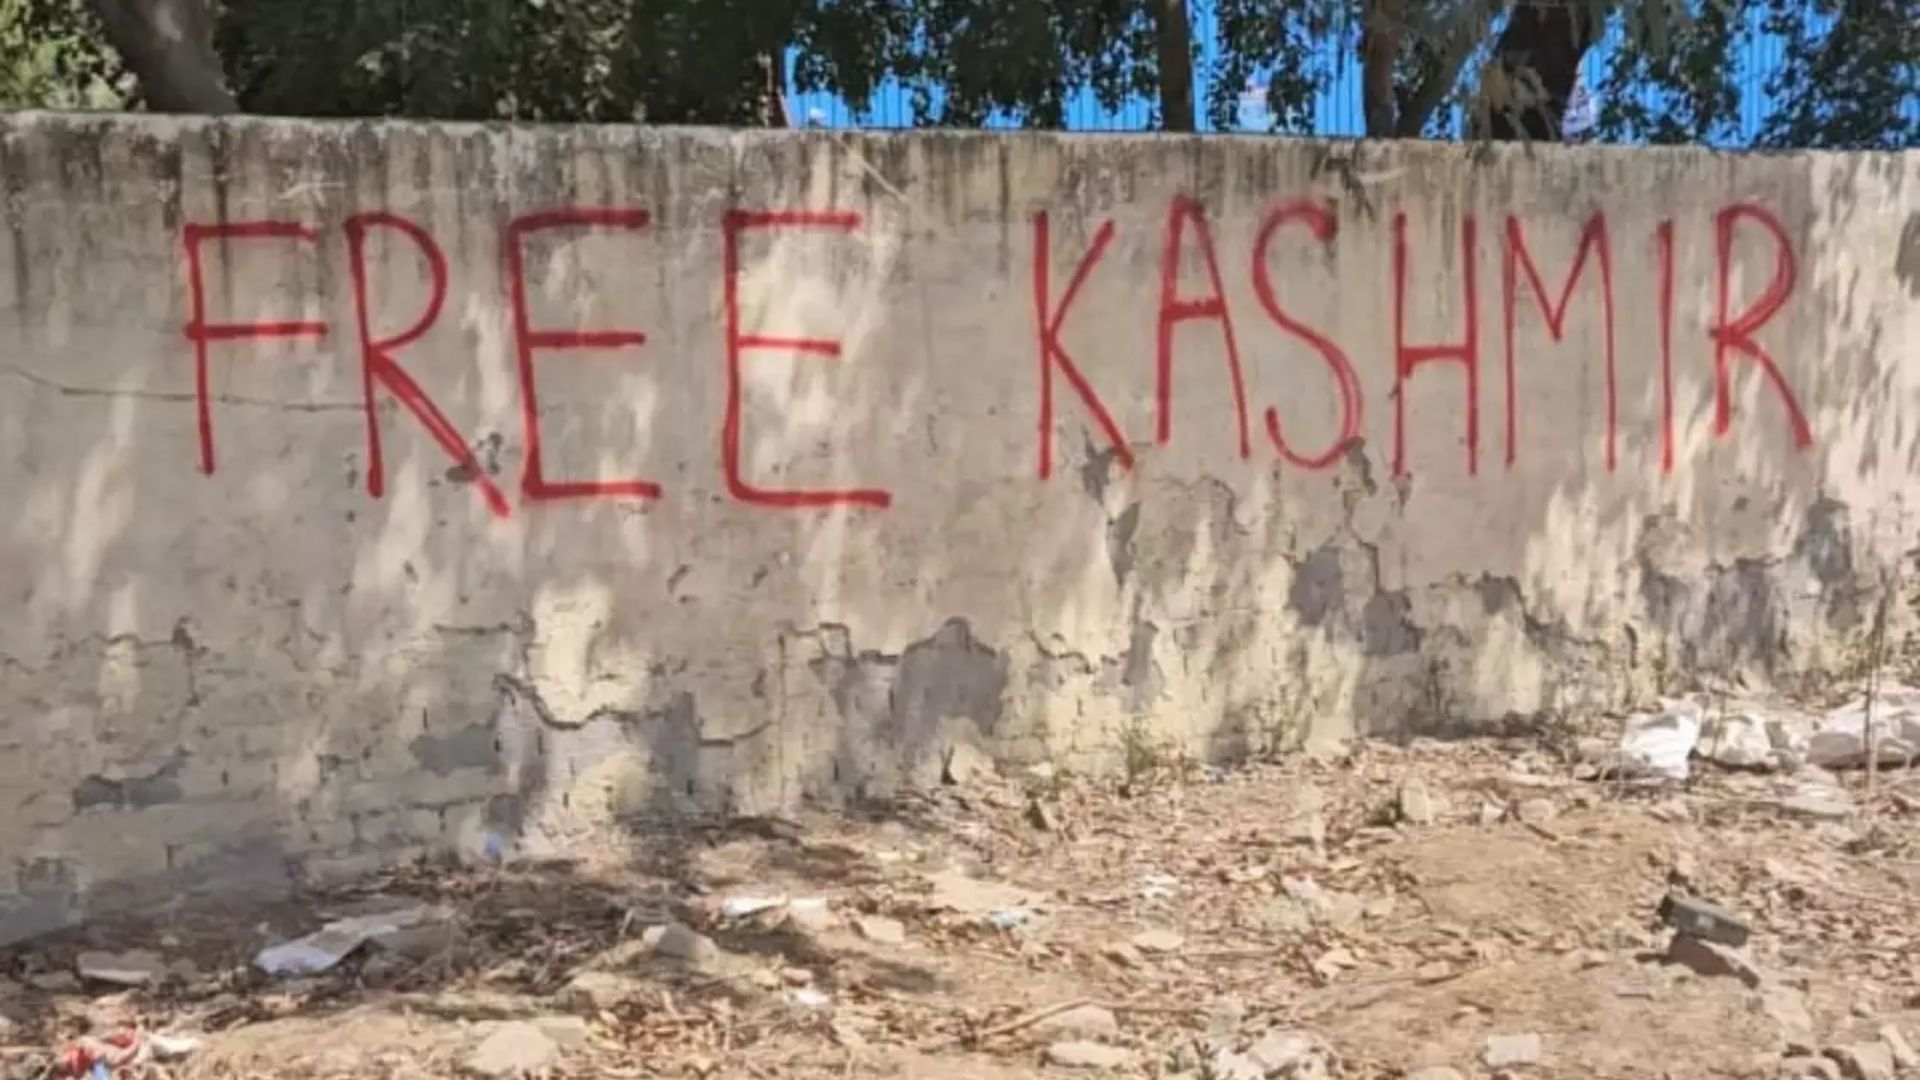 'Free Kashmir' Written In DDA Park Wall